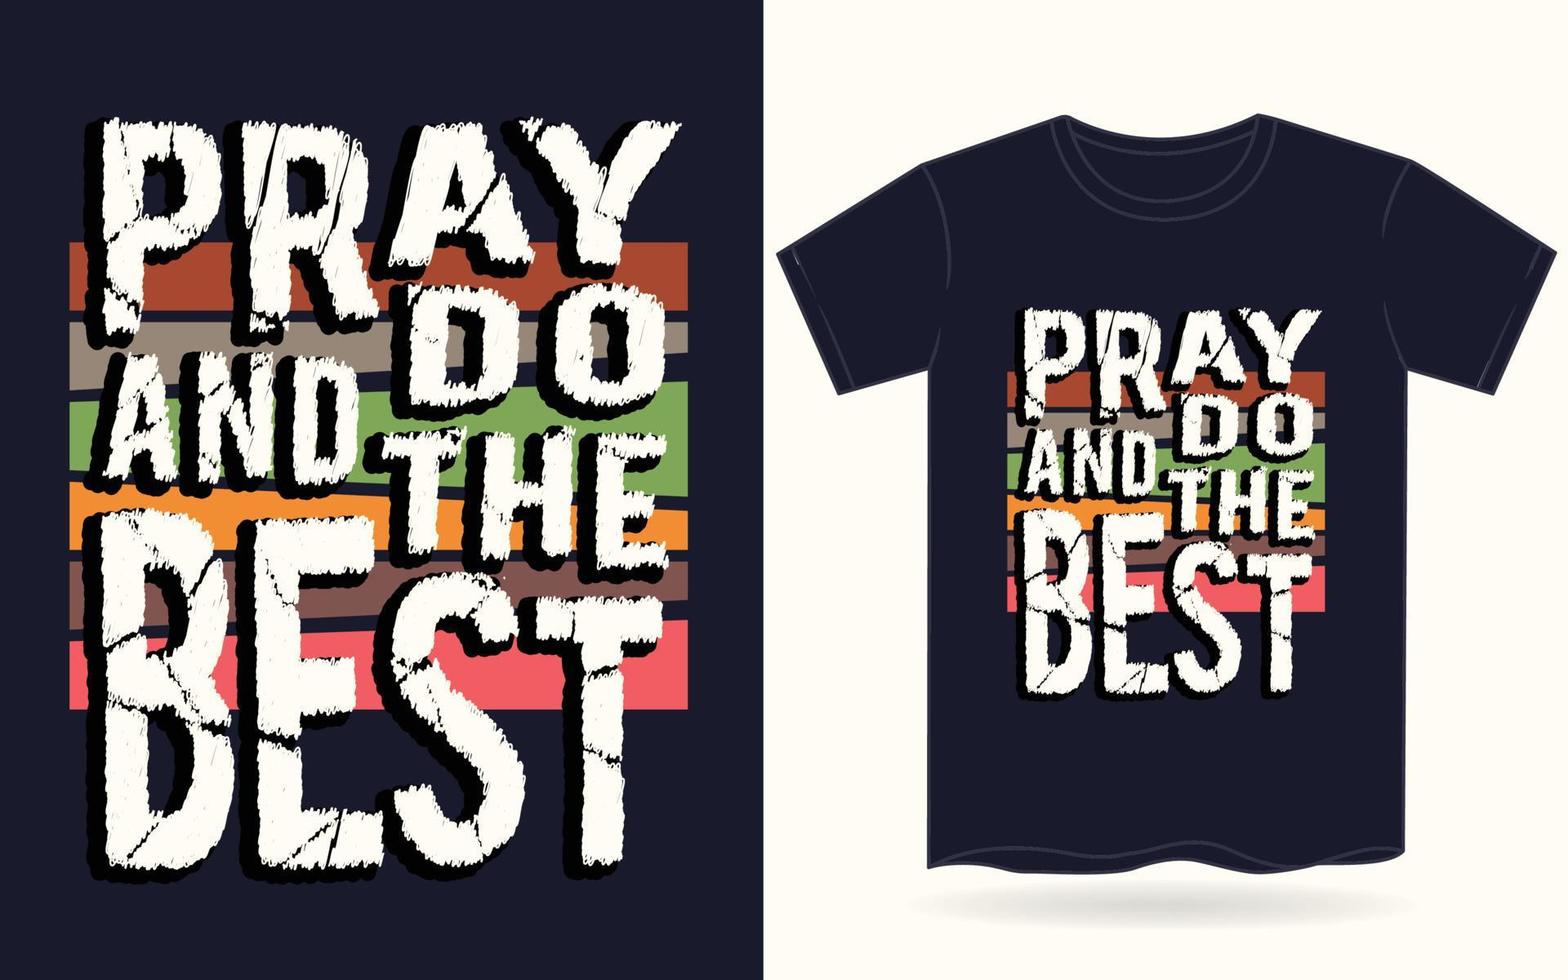 be och gör den bästa typografin för t-shirt vektor